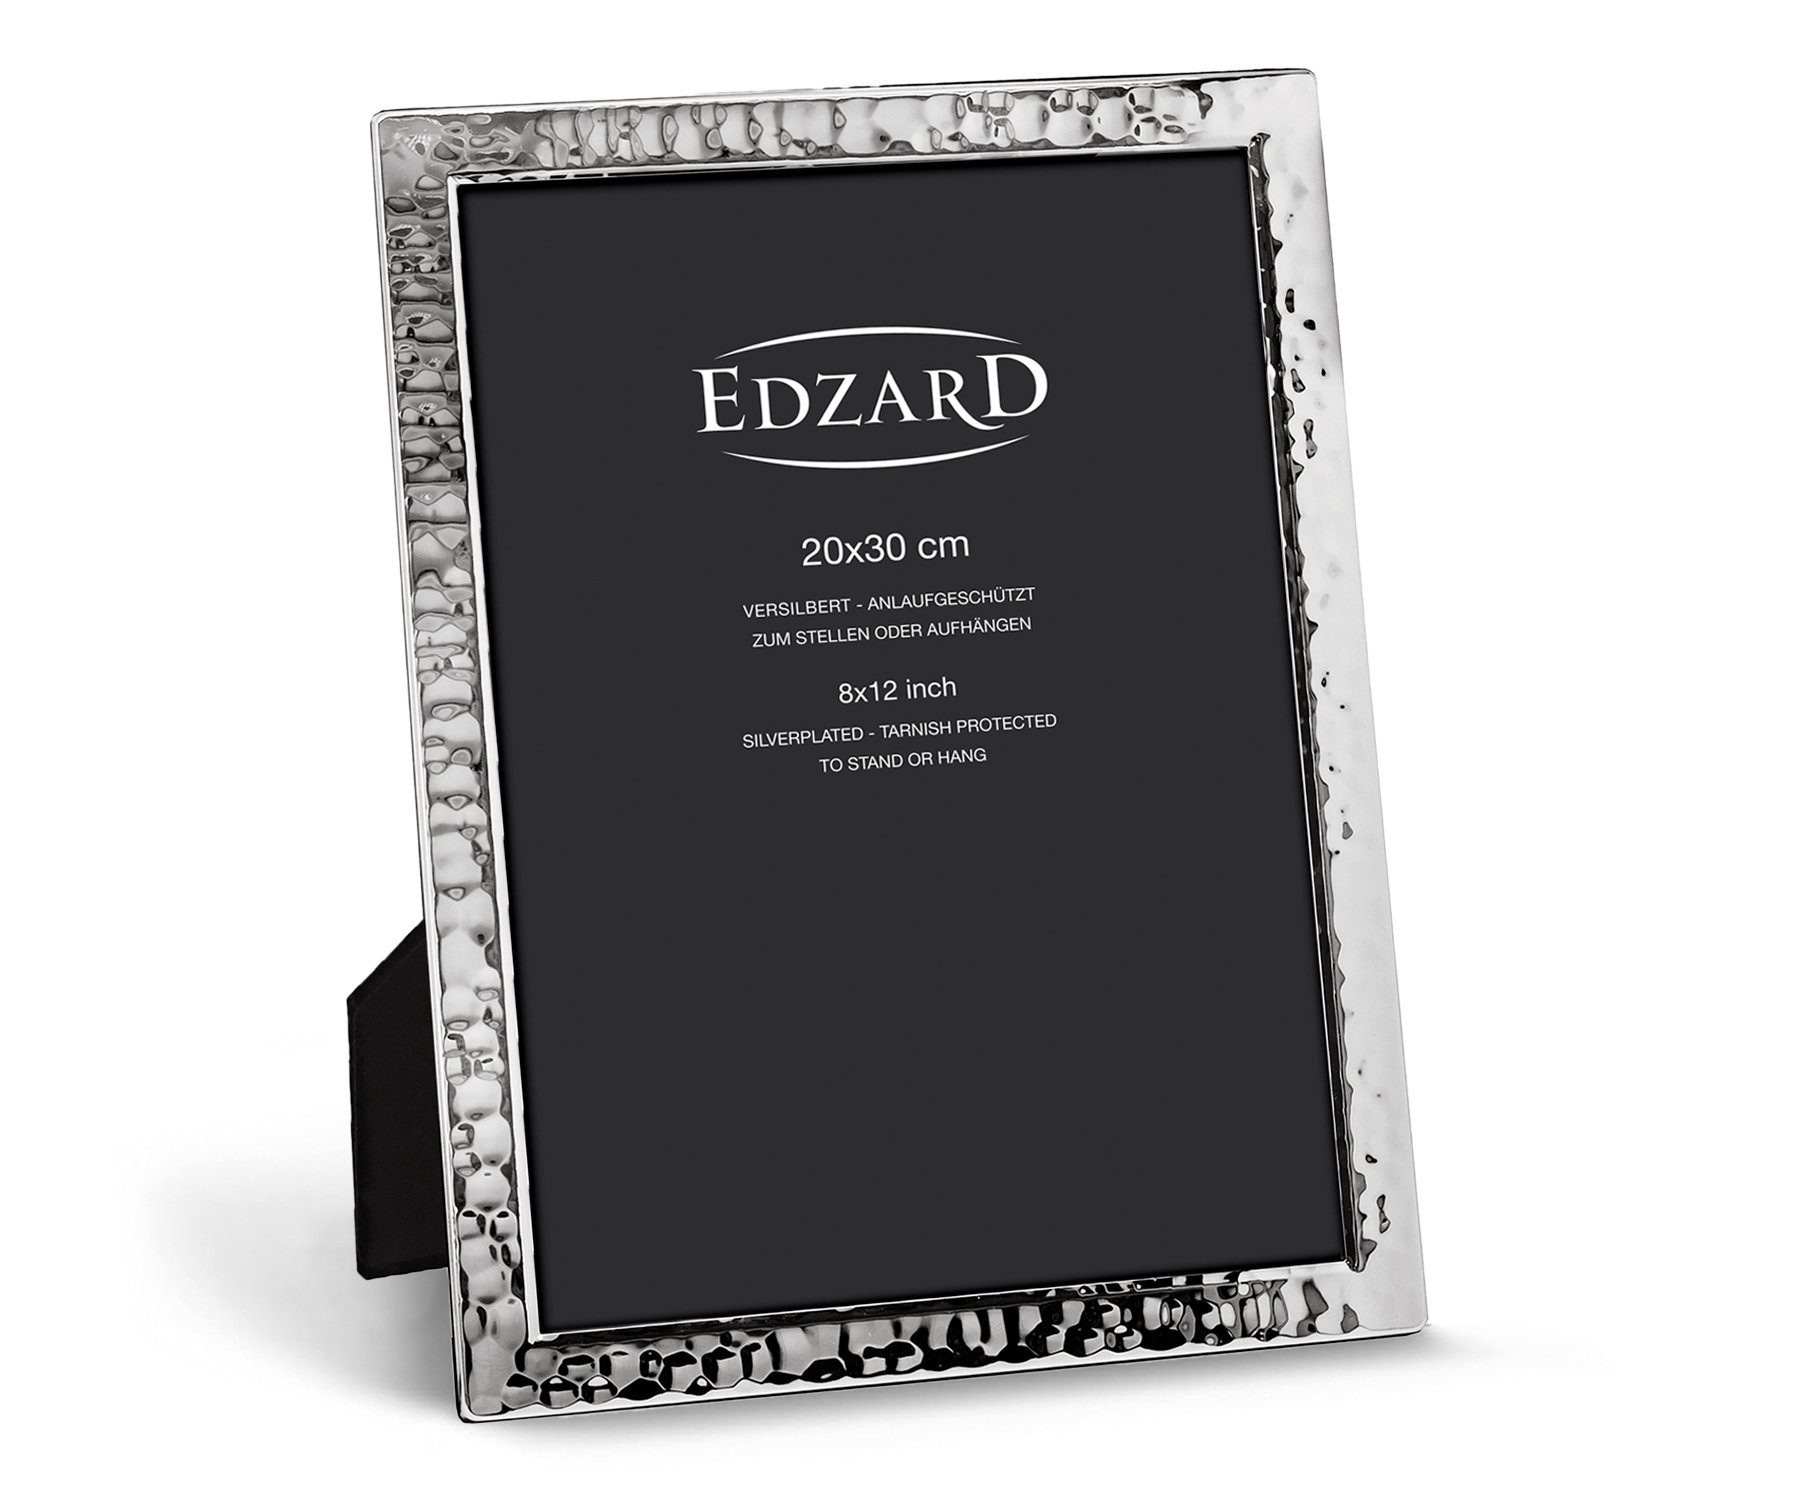 EDZARD Bilderrahmen Pavia, für 20x30 cm Foto (ca. A4) - edel versilbert und anlaufgeschützt | Einzelrahmen